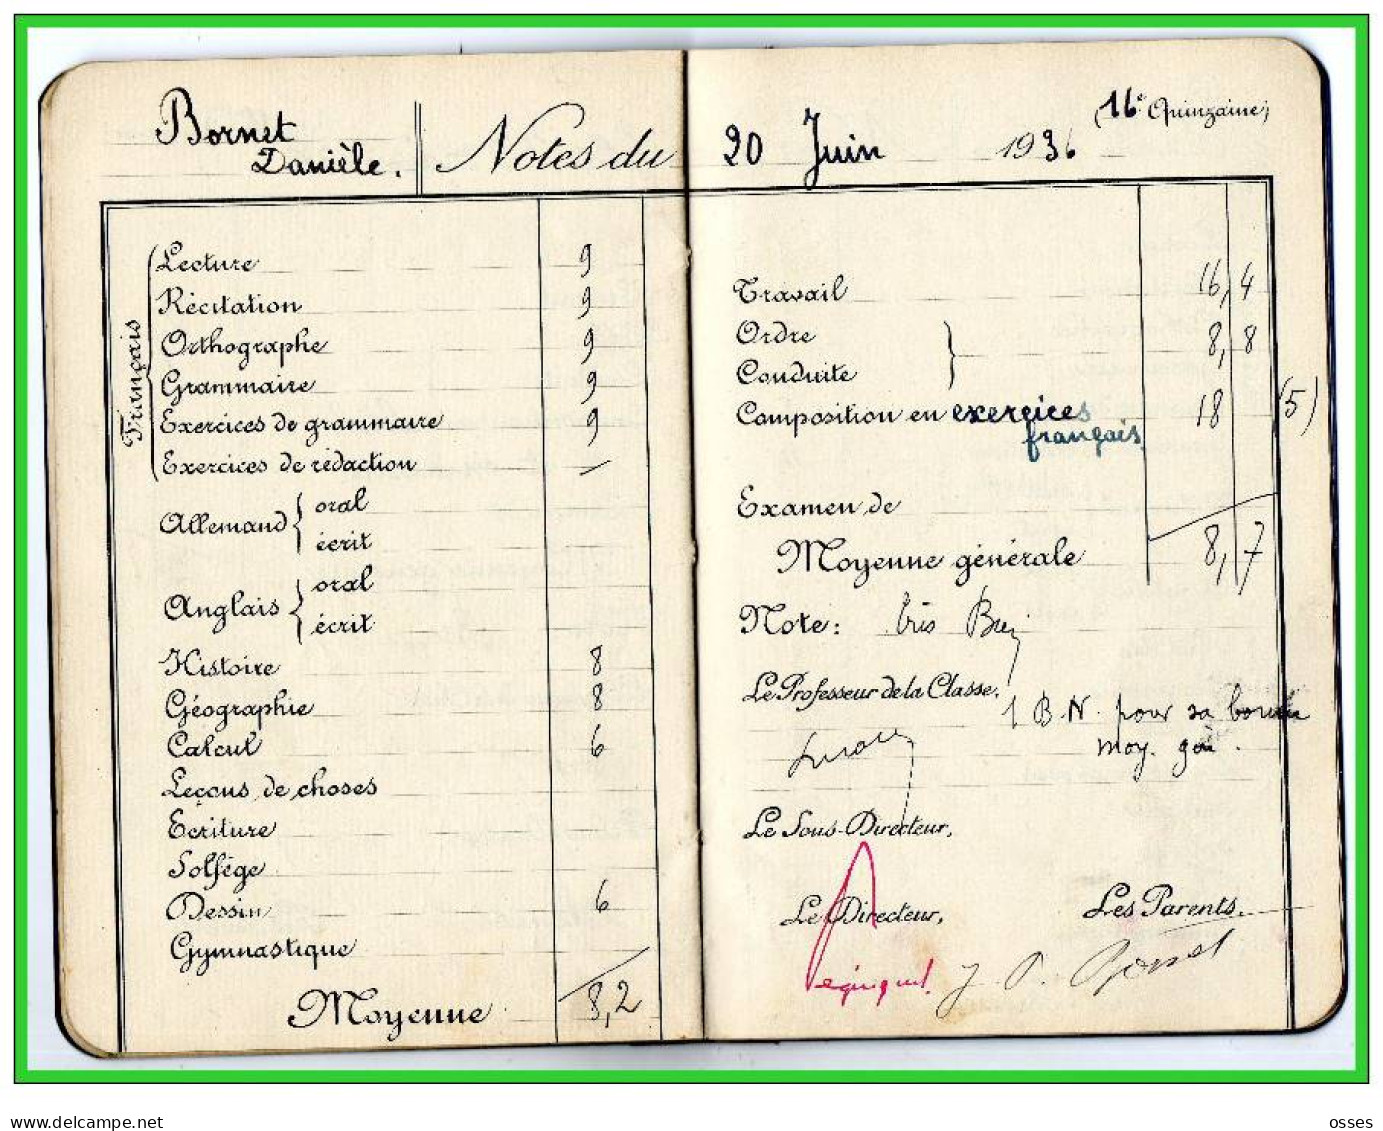 Carnet de Notes ECOLE ALSACIENNE à Paris. AnnéeScolaire 1935/36 (recto,verso, intérieurs)